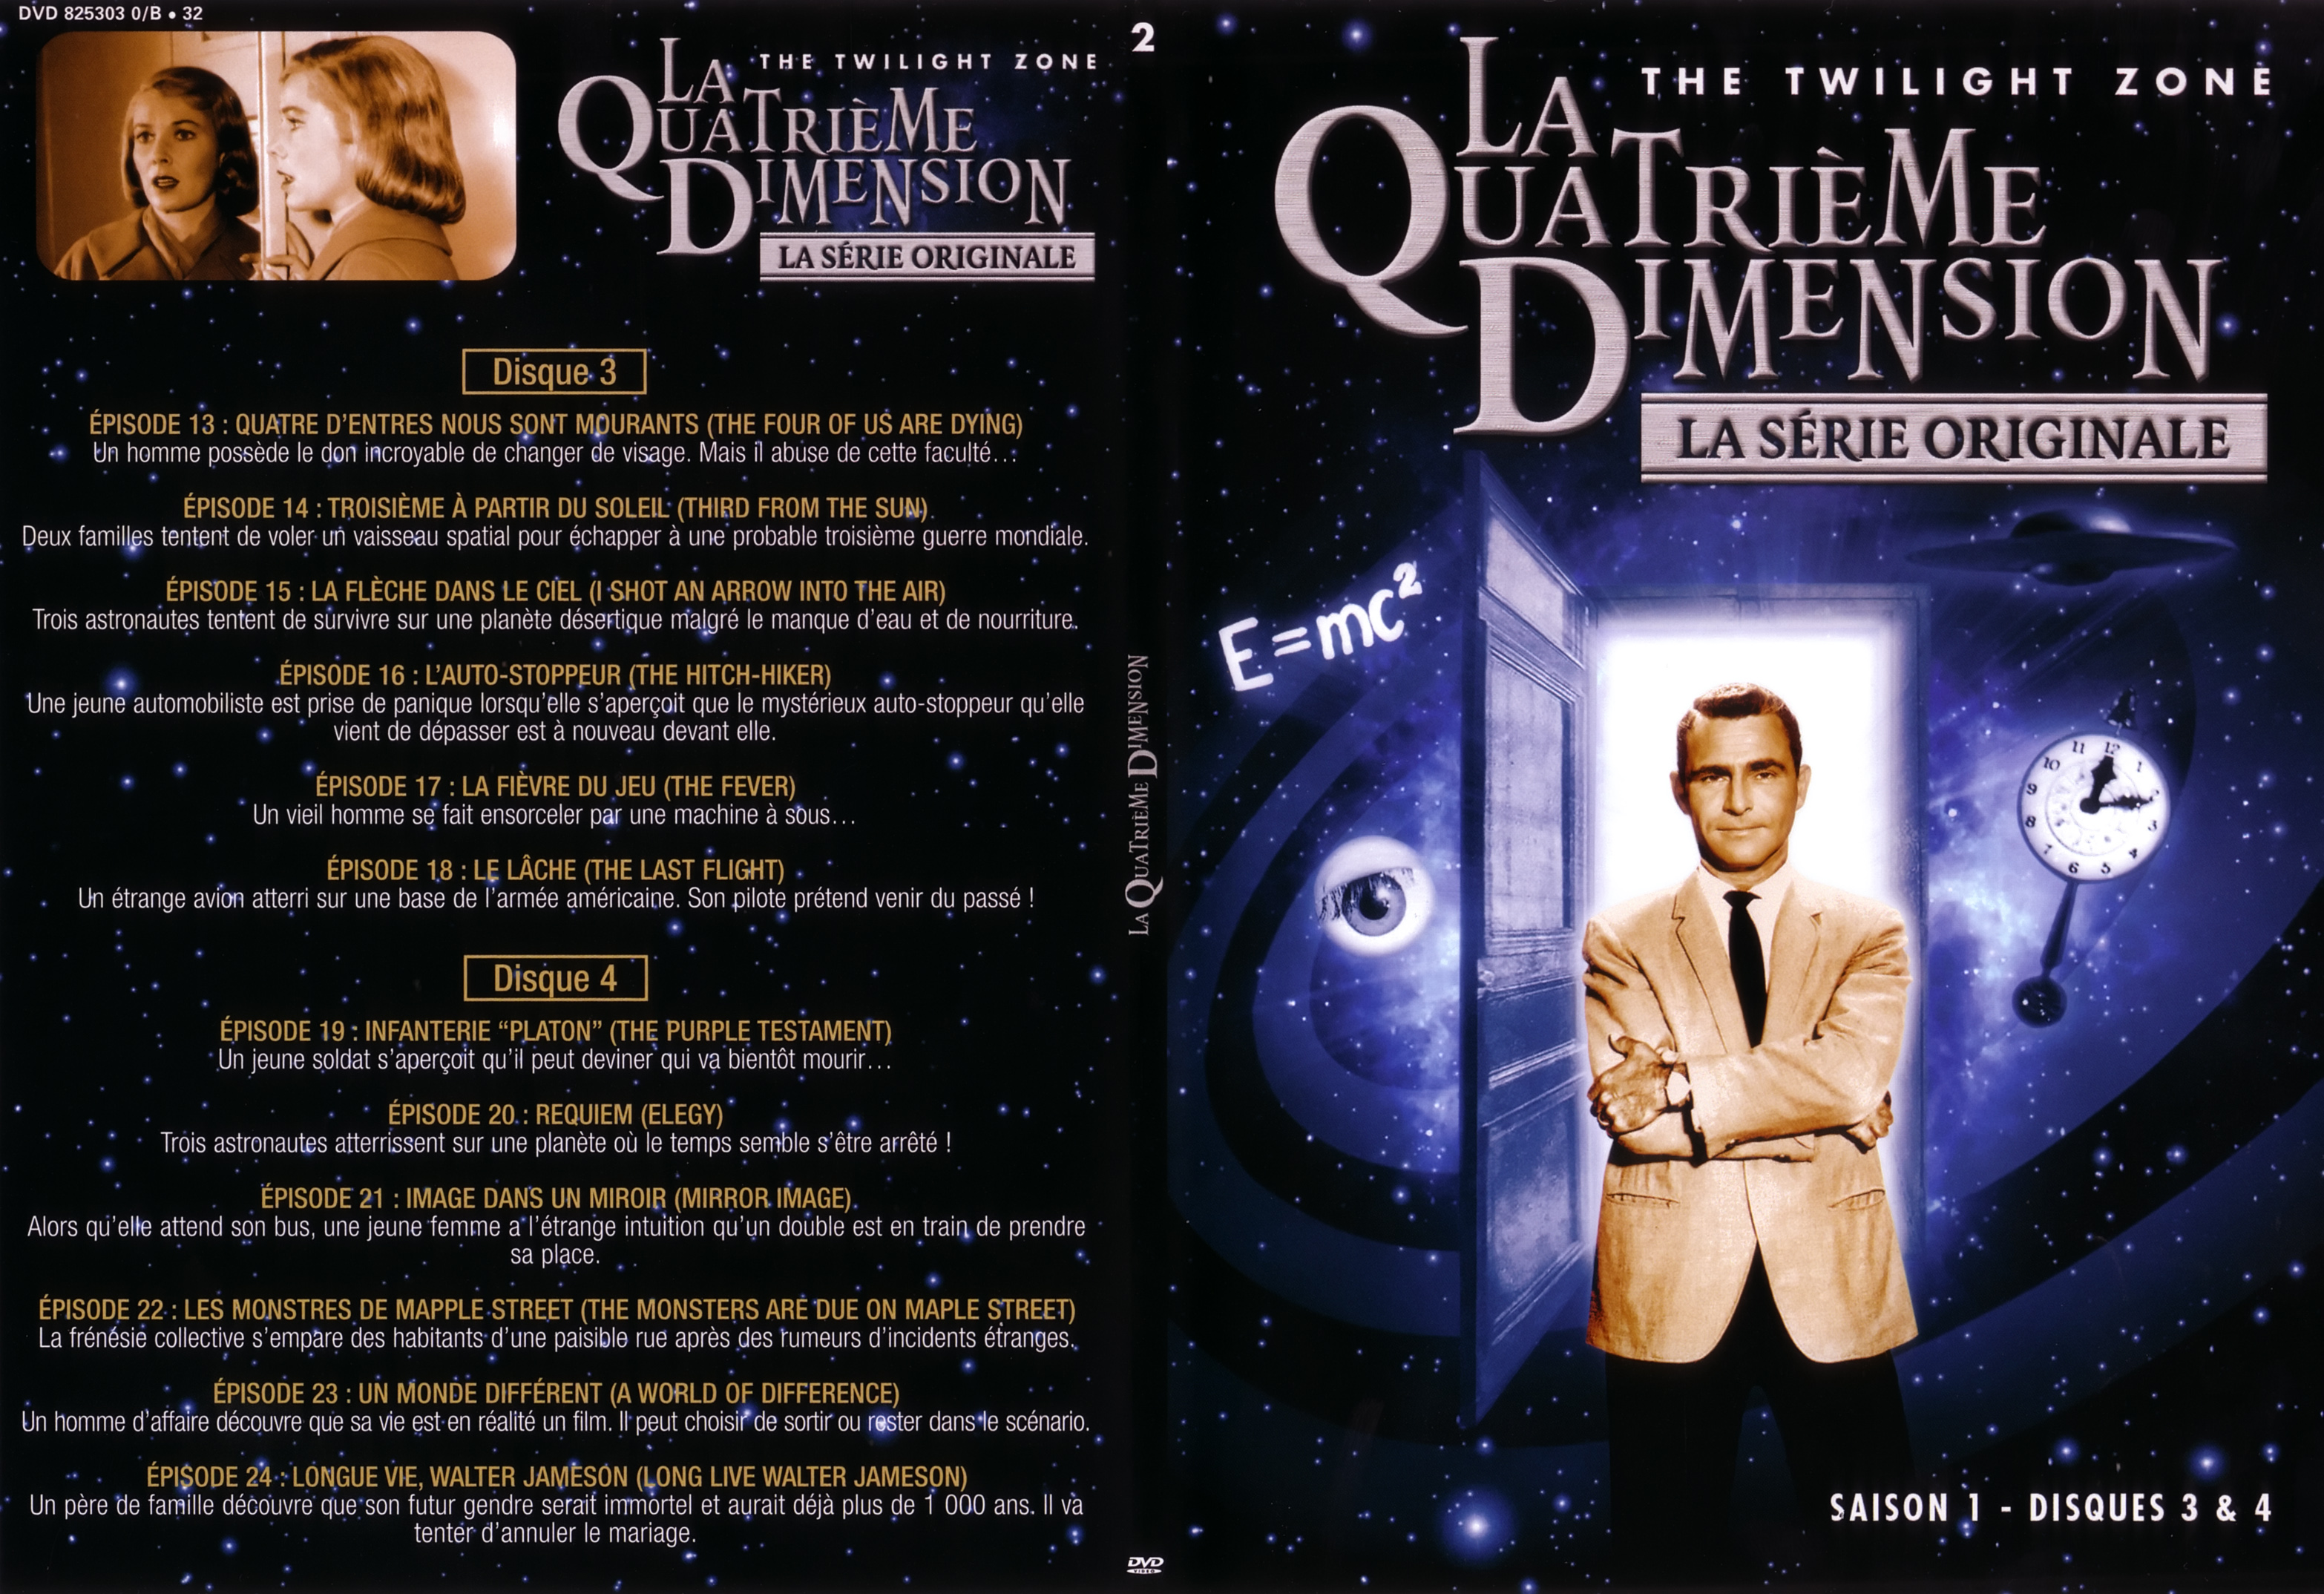 Jaquette DVD La quatrieme dimension saison 1 vol 2